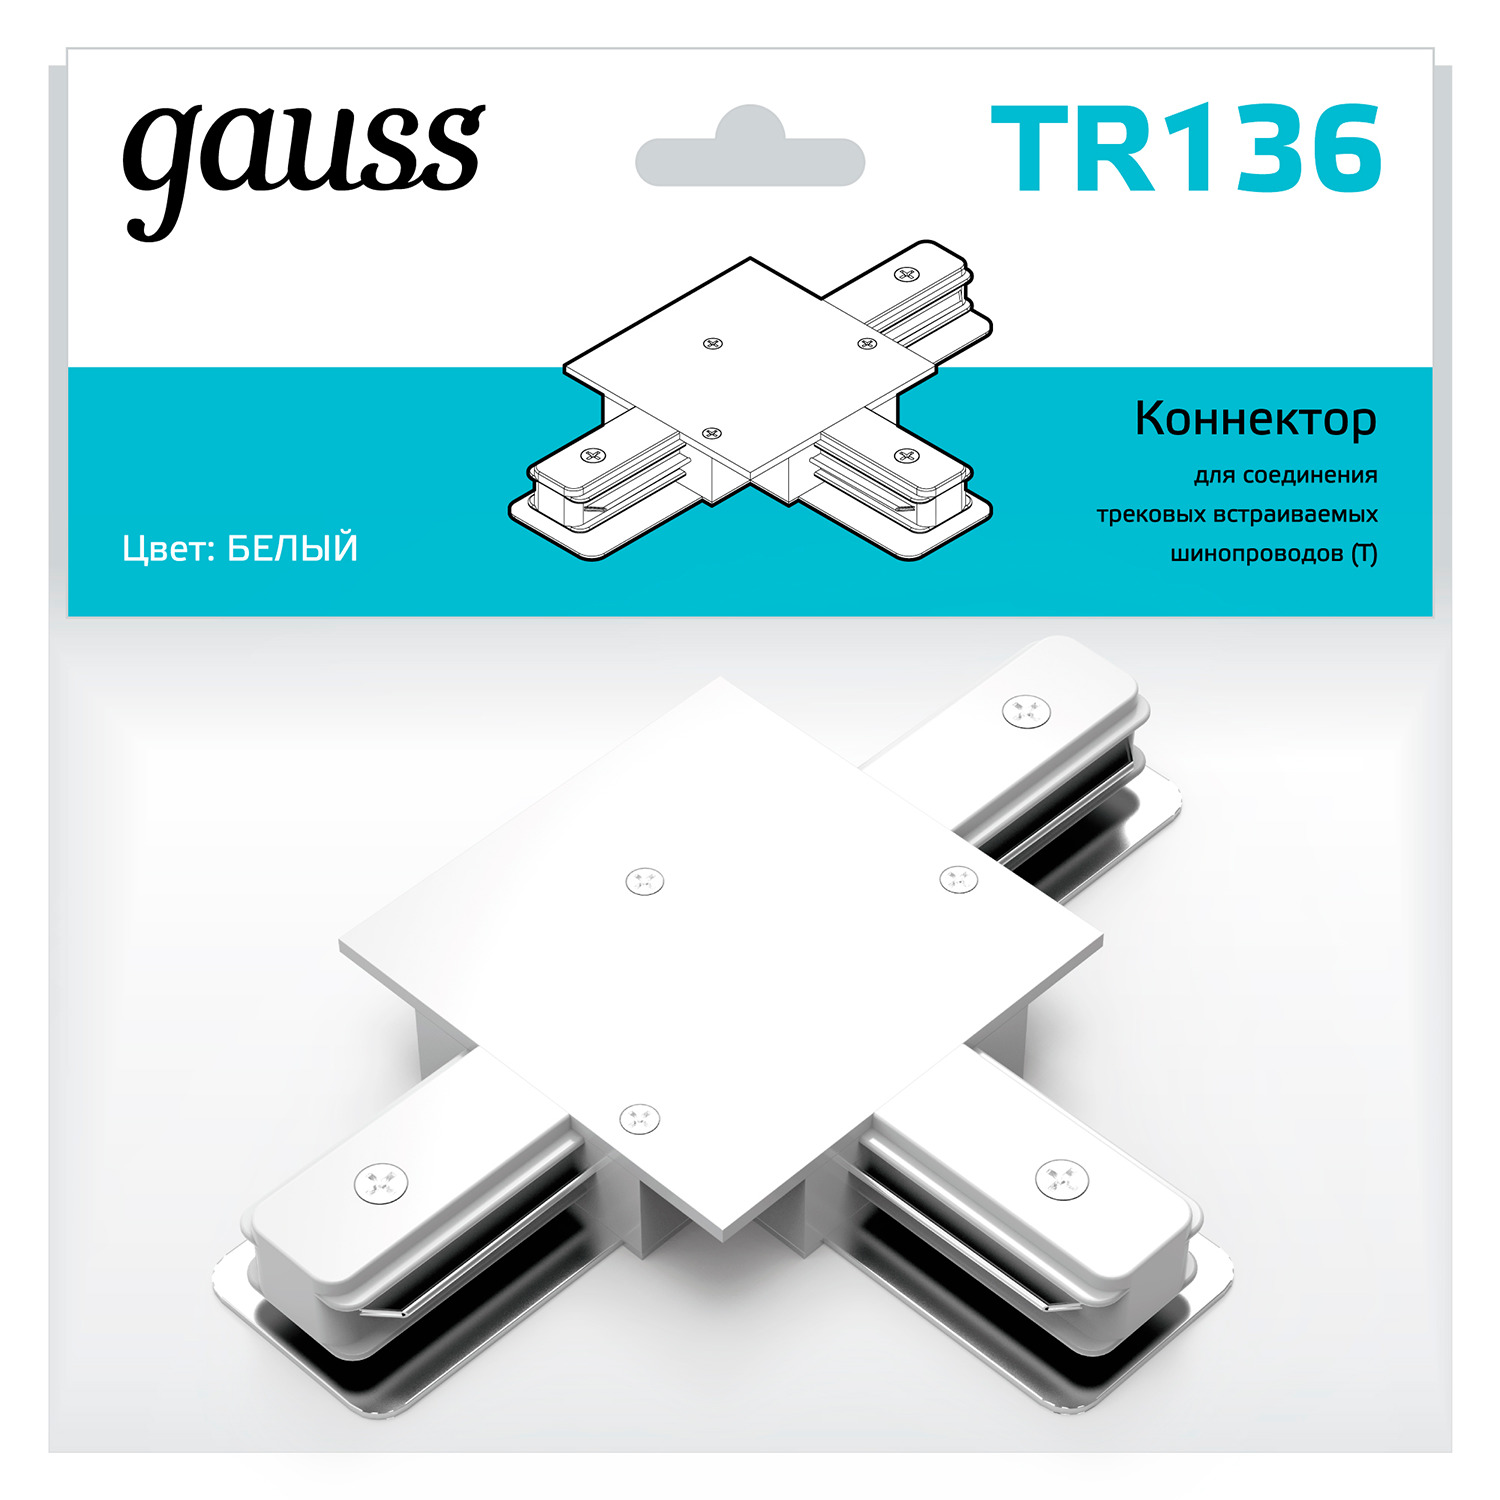 Коннектор Gauss для встраиваемых трековых шинопроводов (T) белый коннектор gauss для встраиваемых трековых шинопроводов гибкий i белый